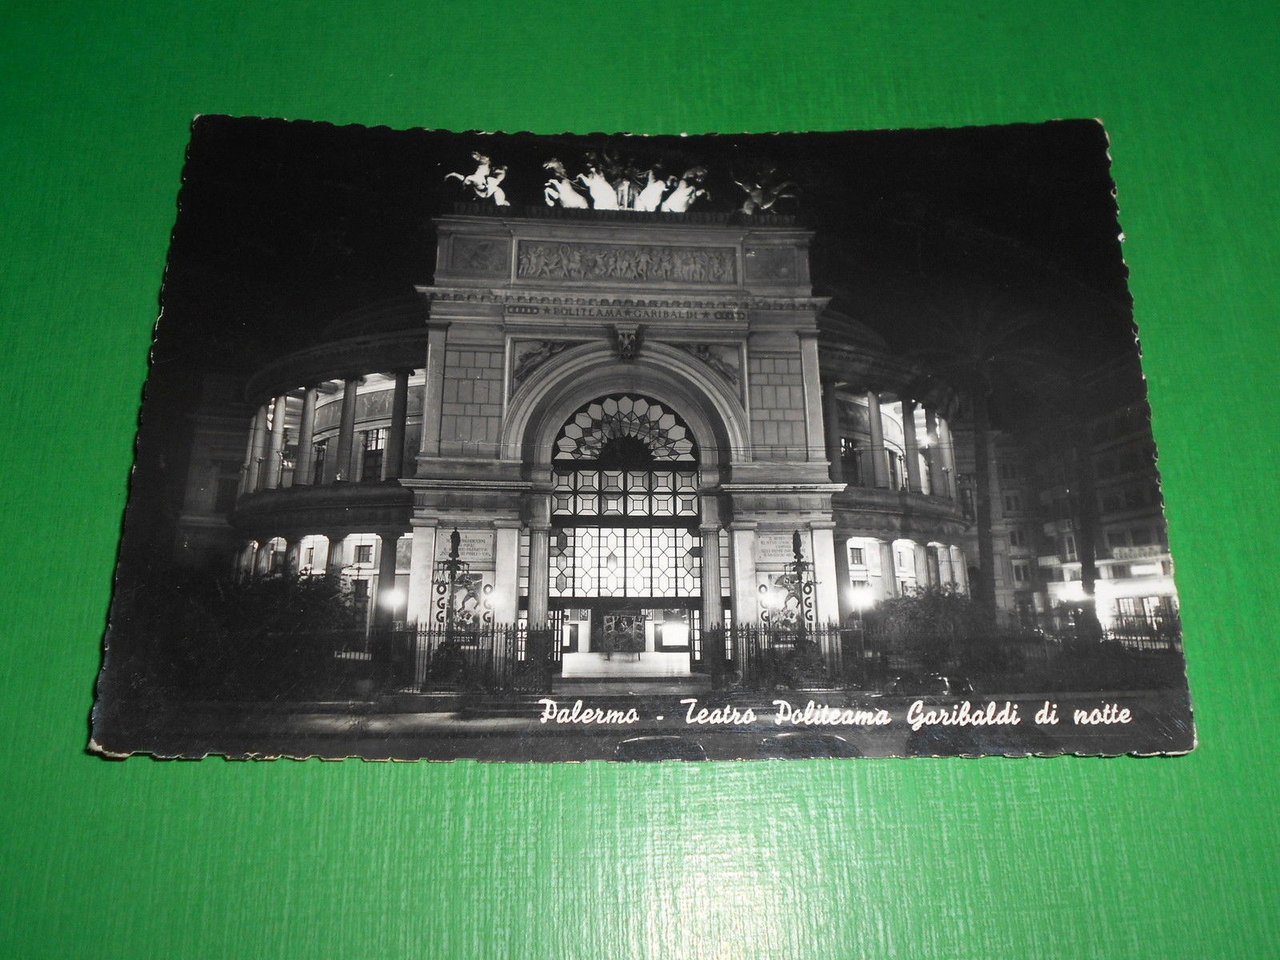 Cartolina Palermo - Teatro Politeama Garibaldi di notte 1950.